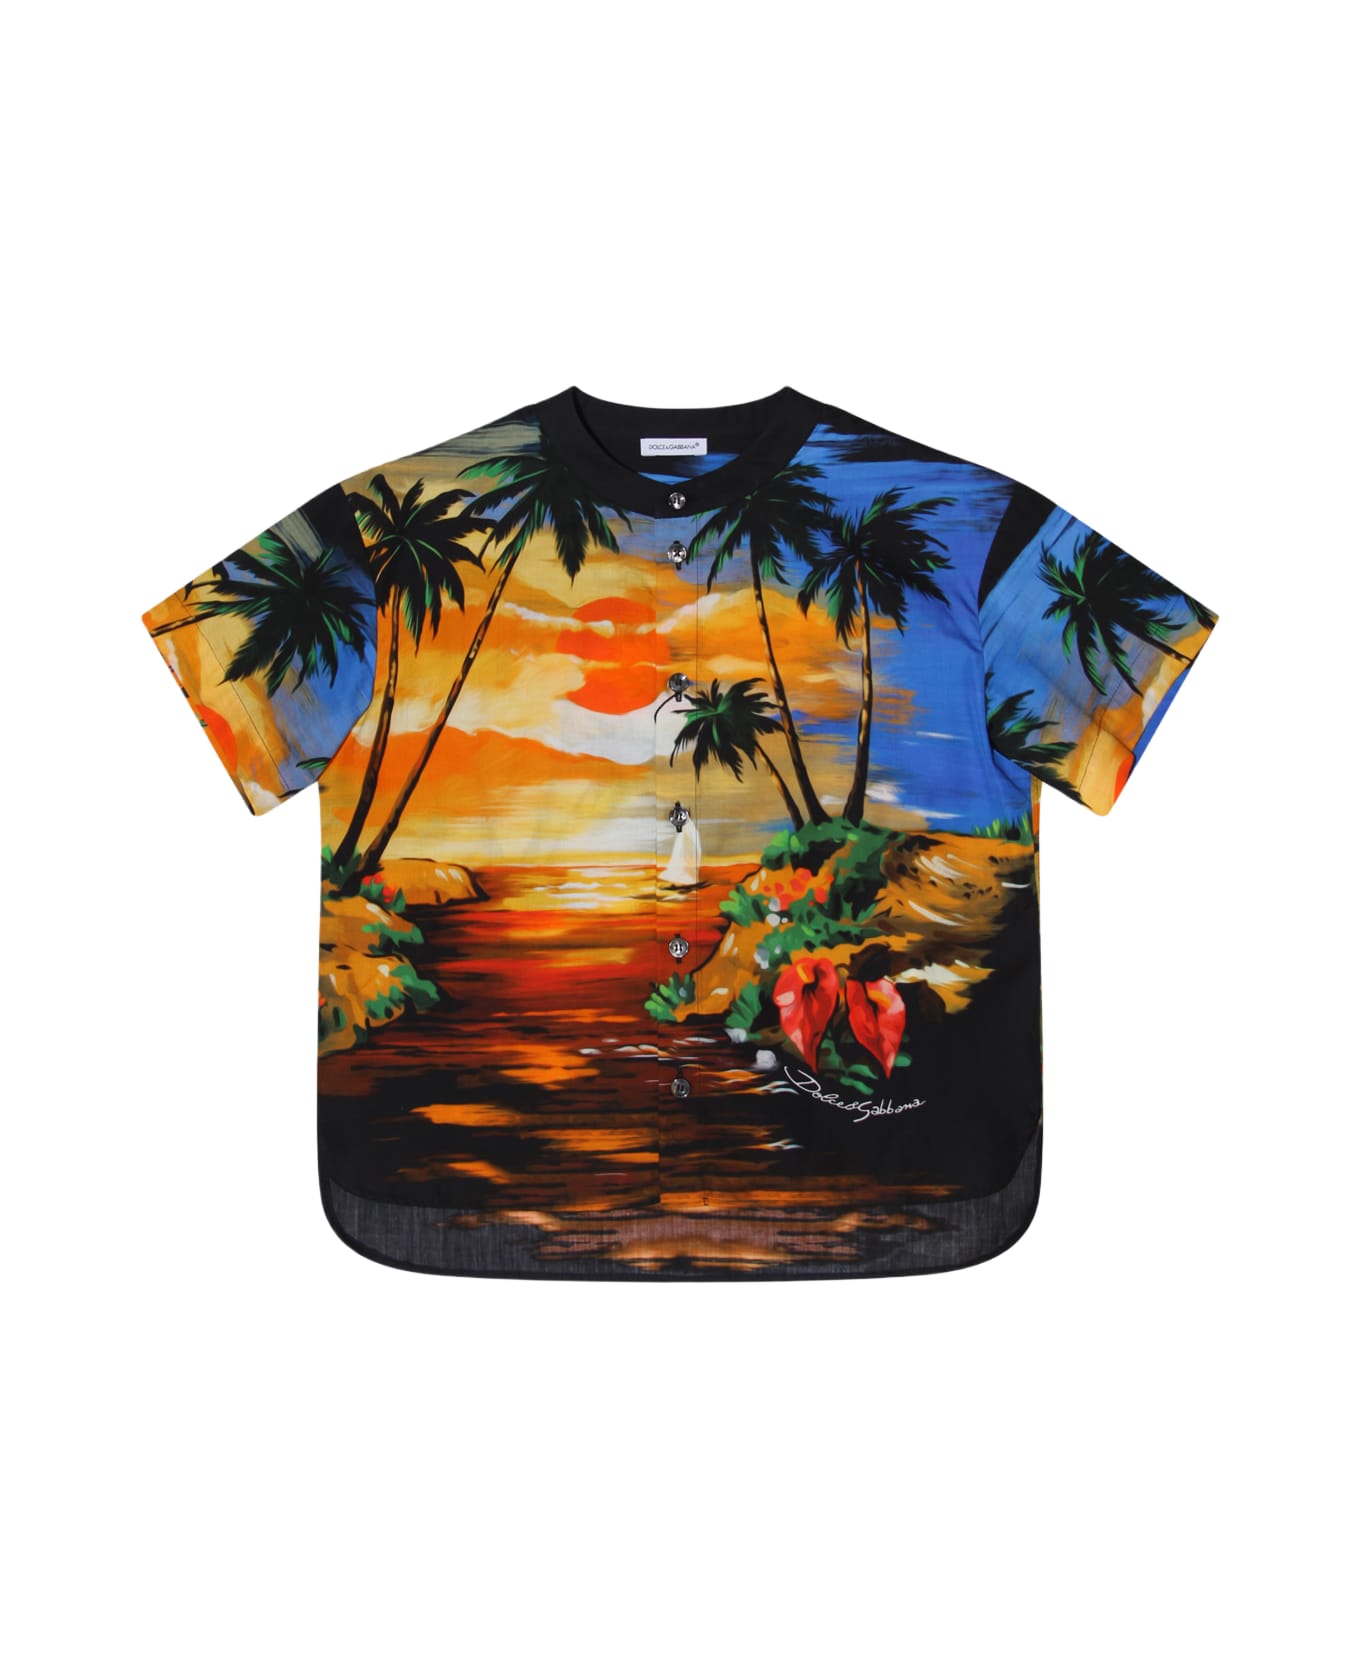 Dolce & Gabbana Hawaii Cotton Shirt - HAWAII